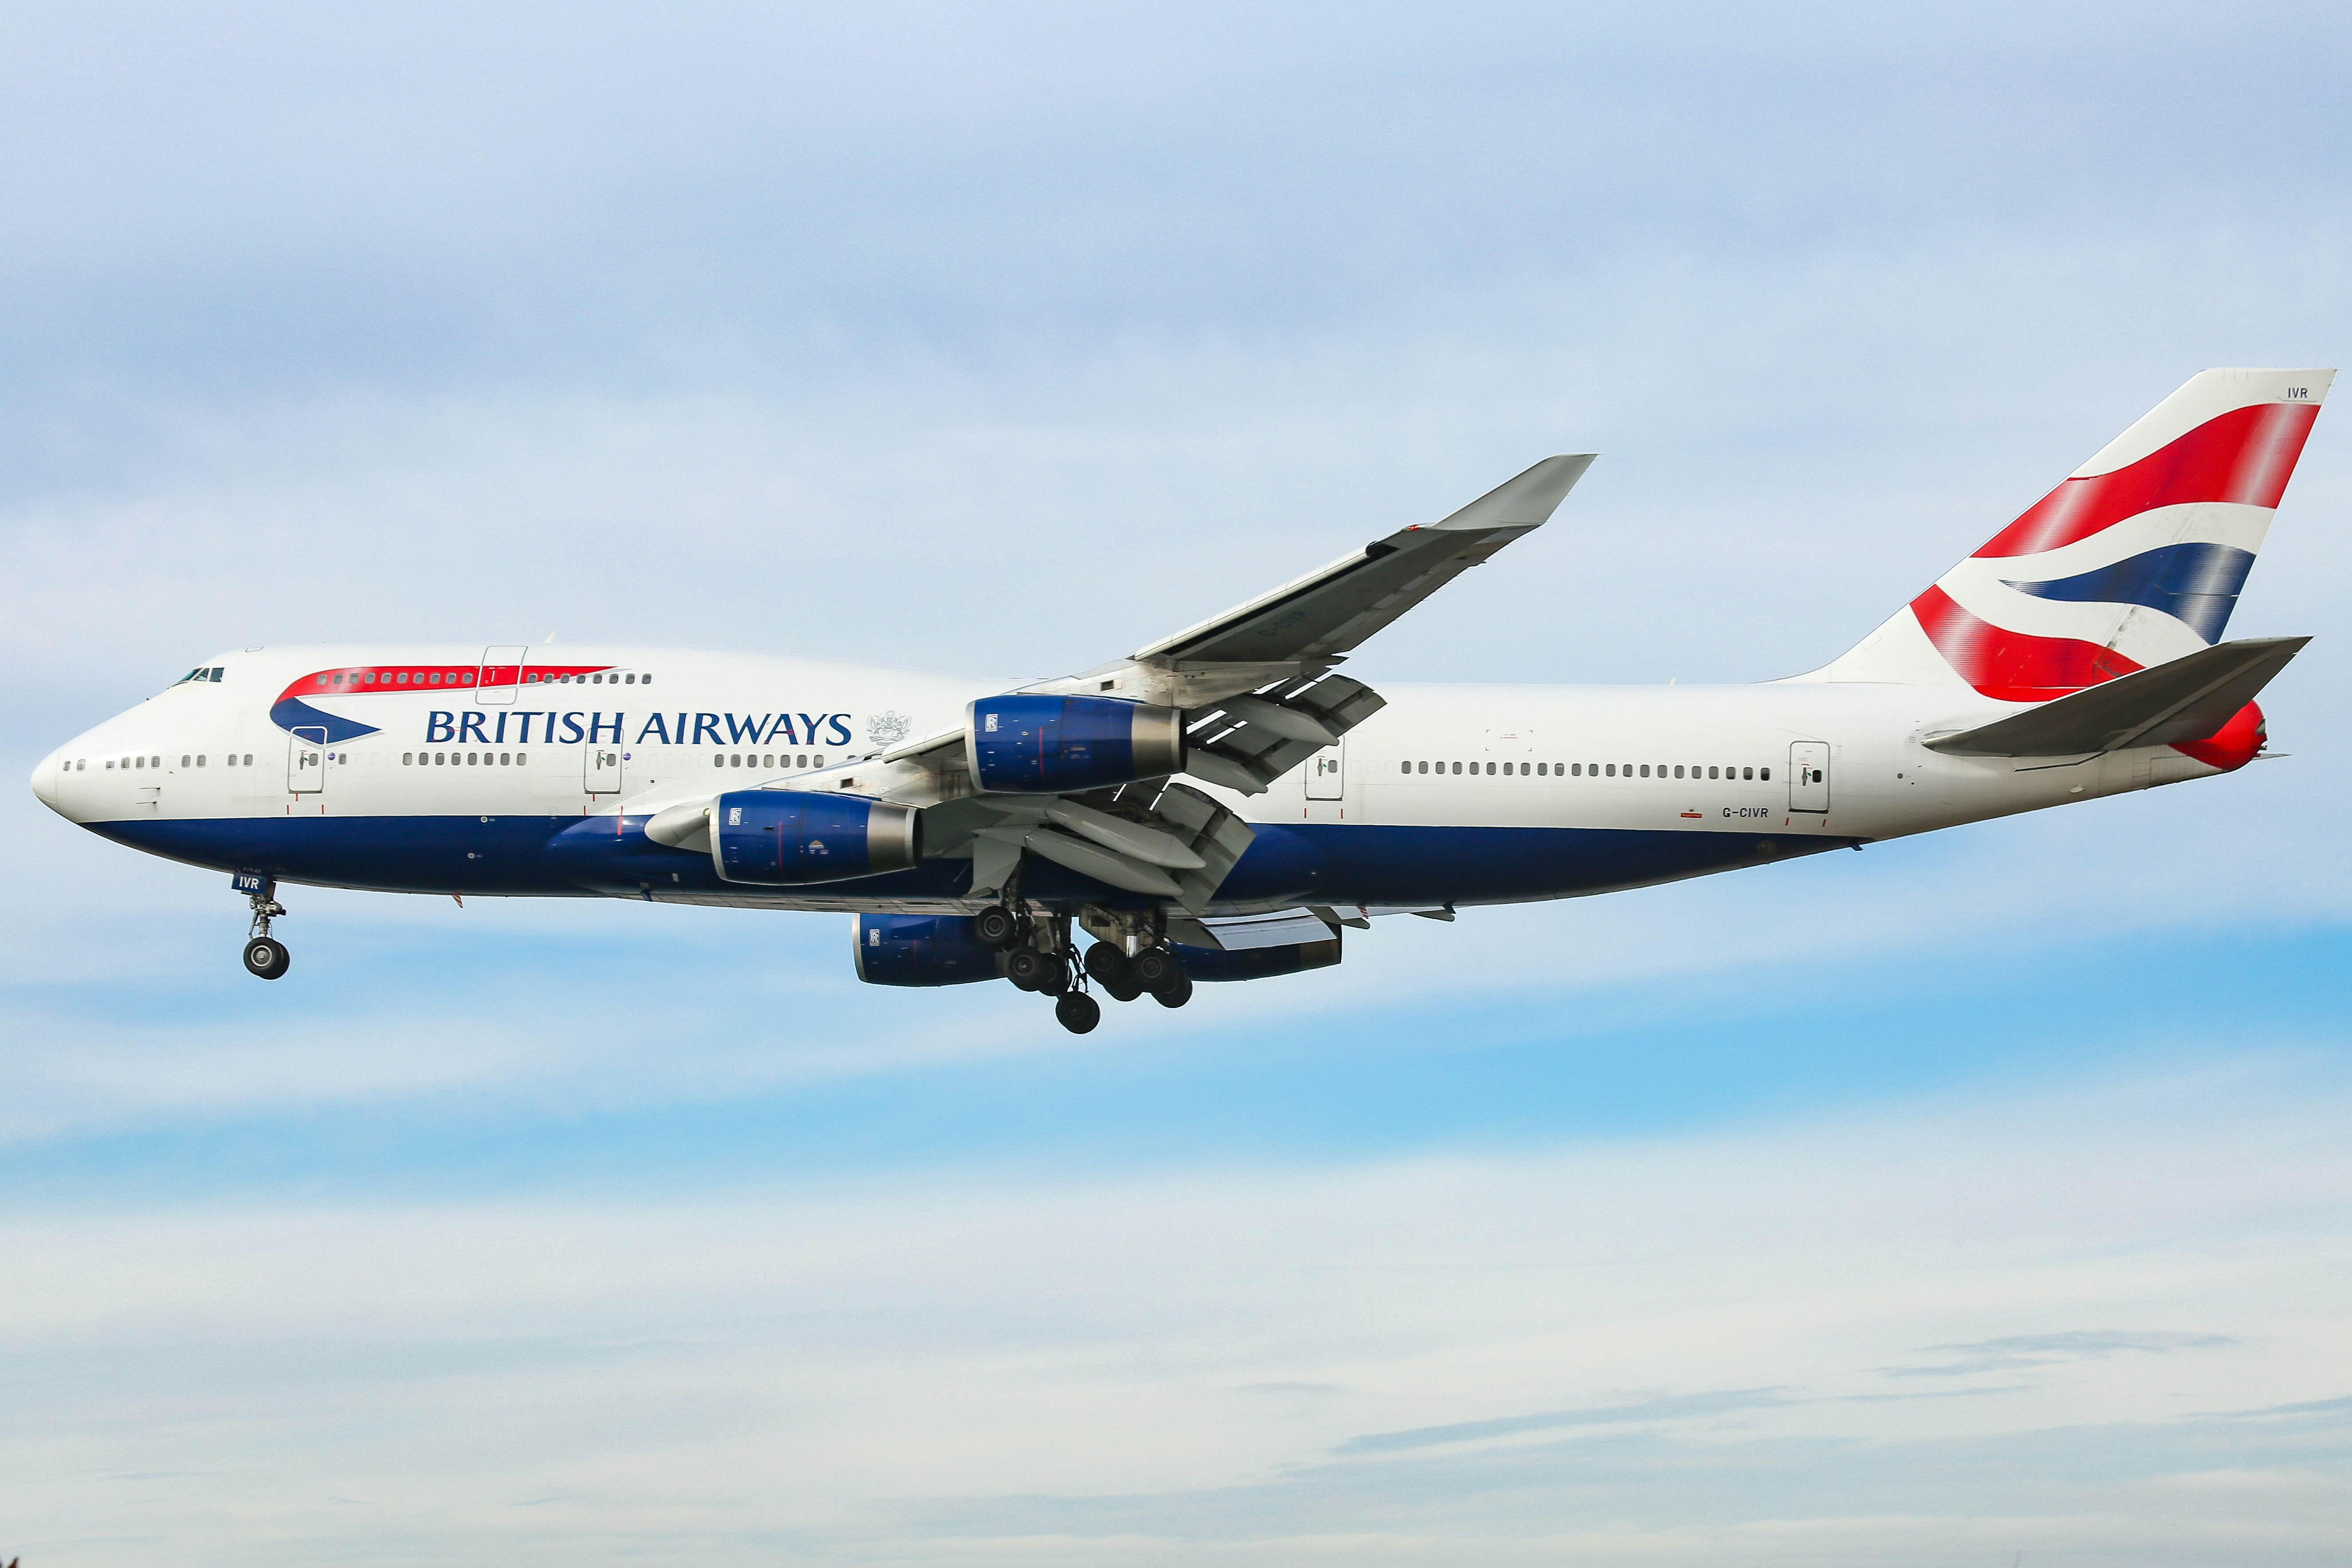 British Airways 747 jumbo jets to COVID-19 pandemic - Planet